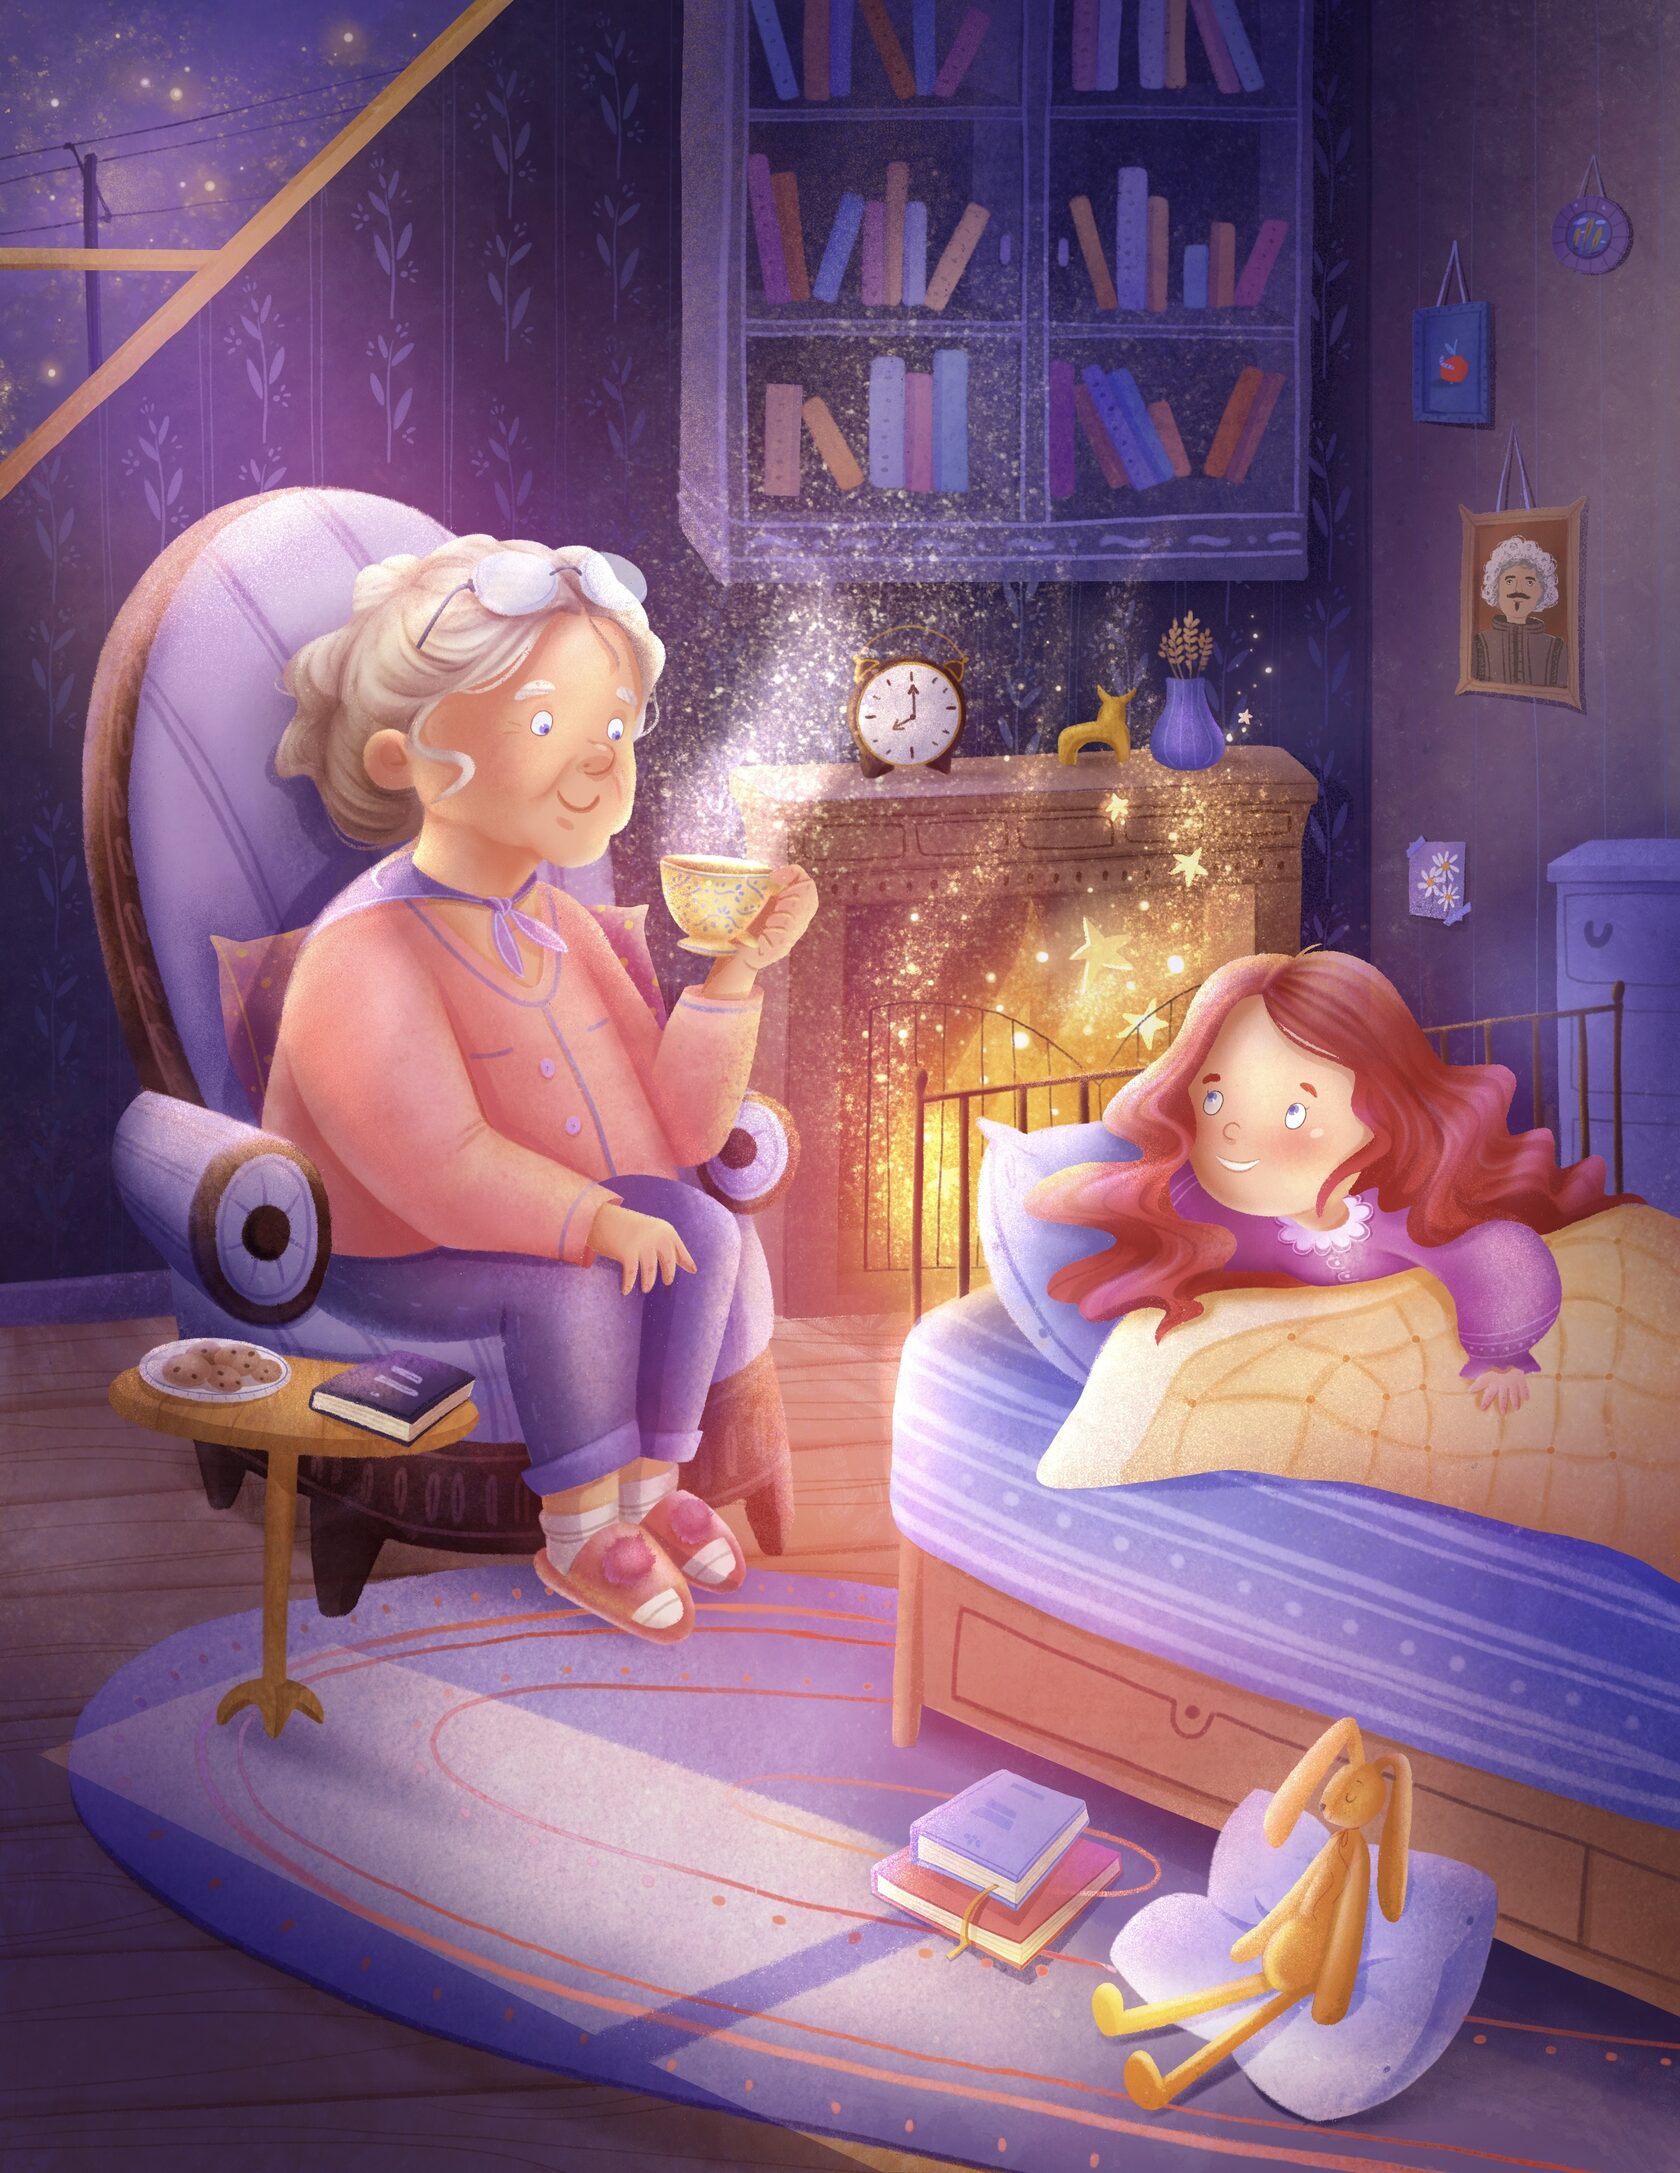 Helena Kubicek Boye and John Cleese Saga Sleep bedtime story